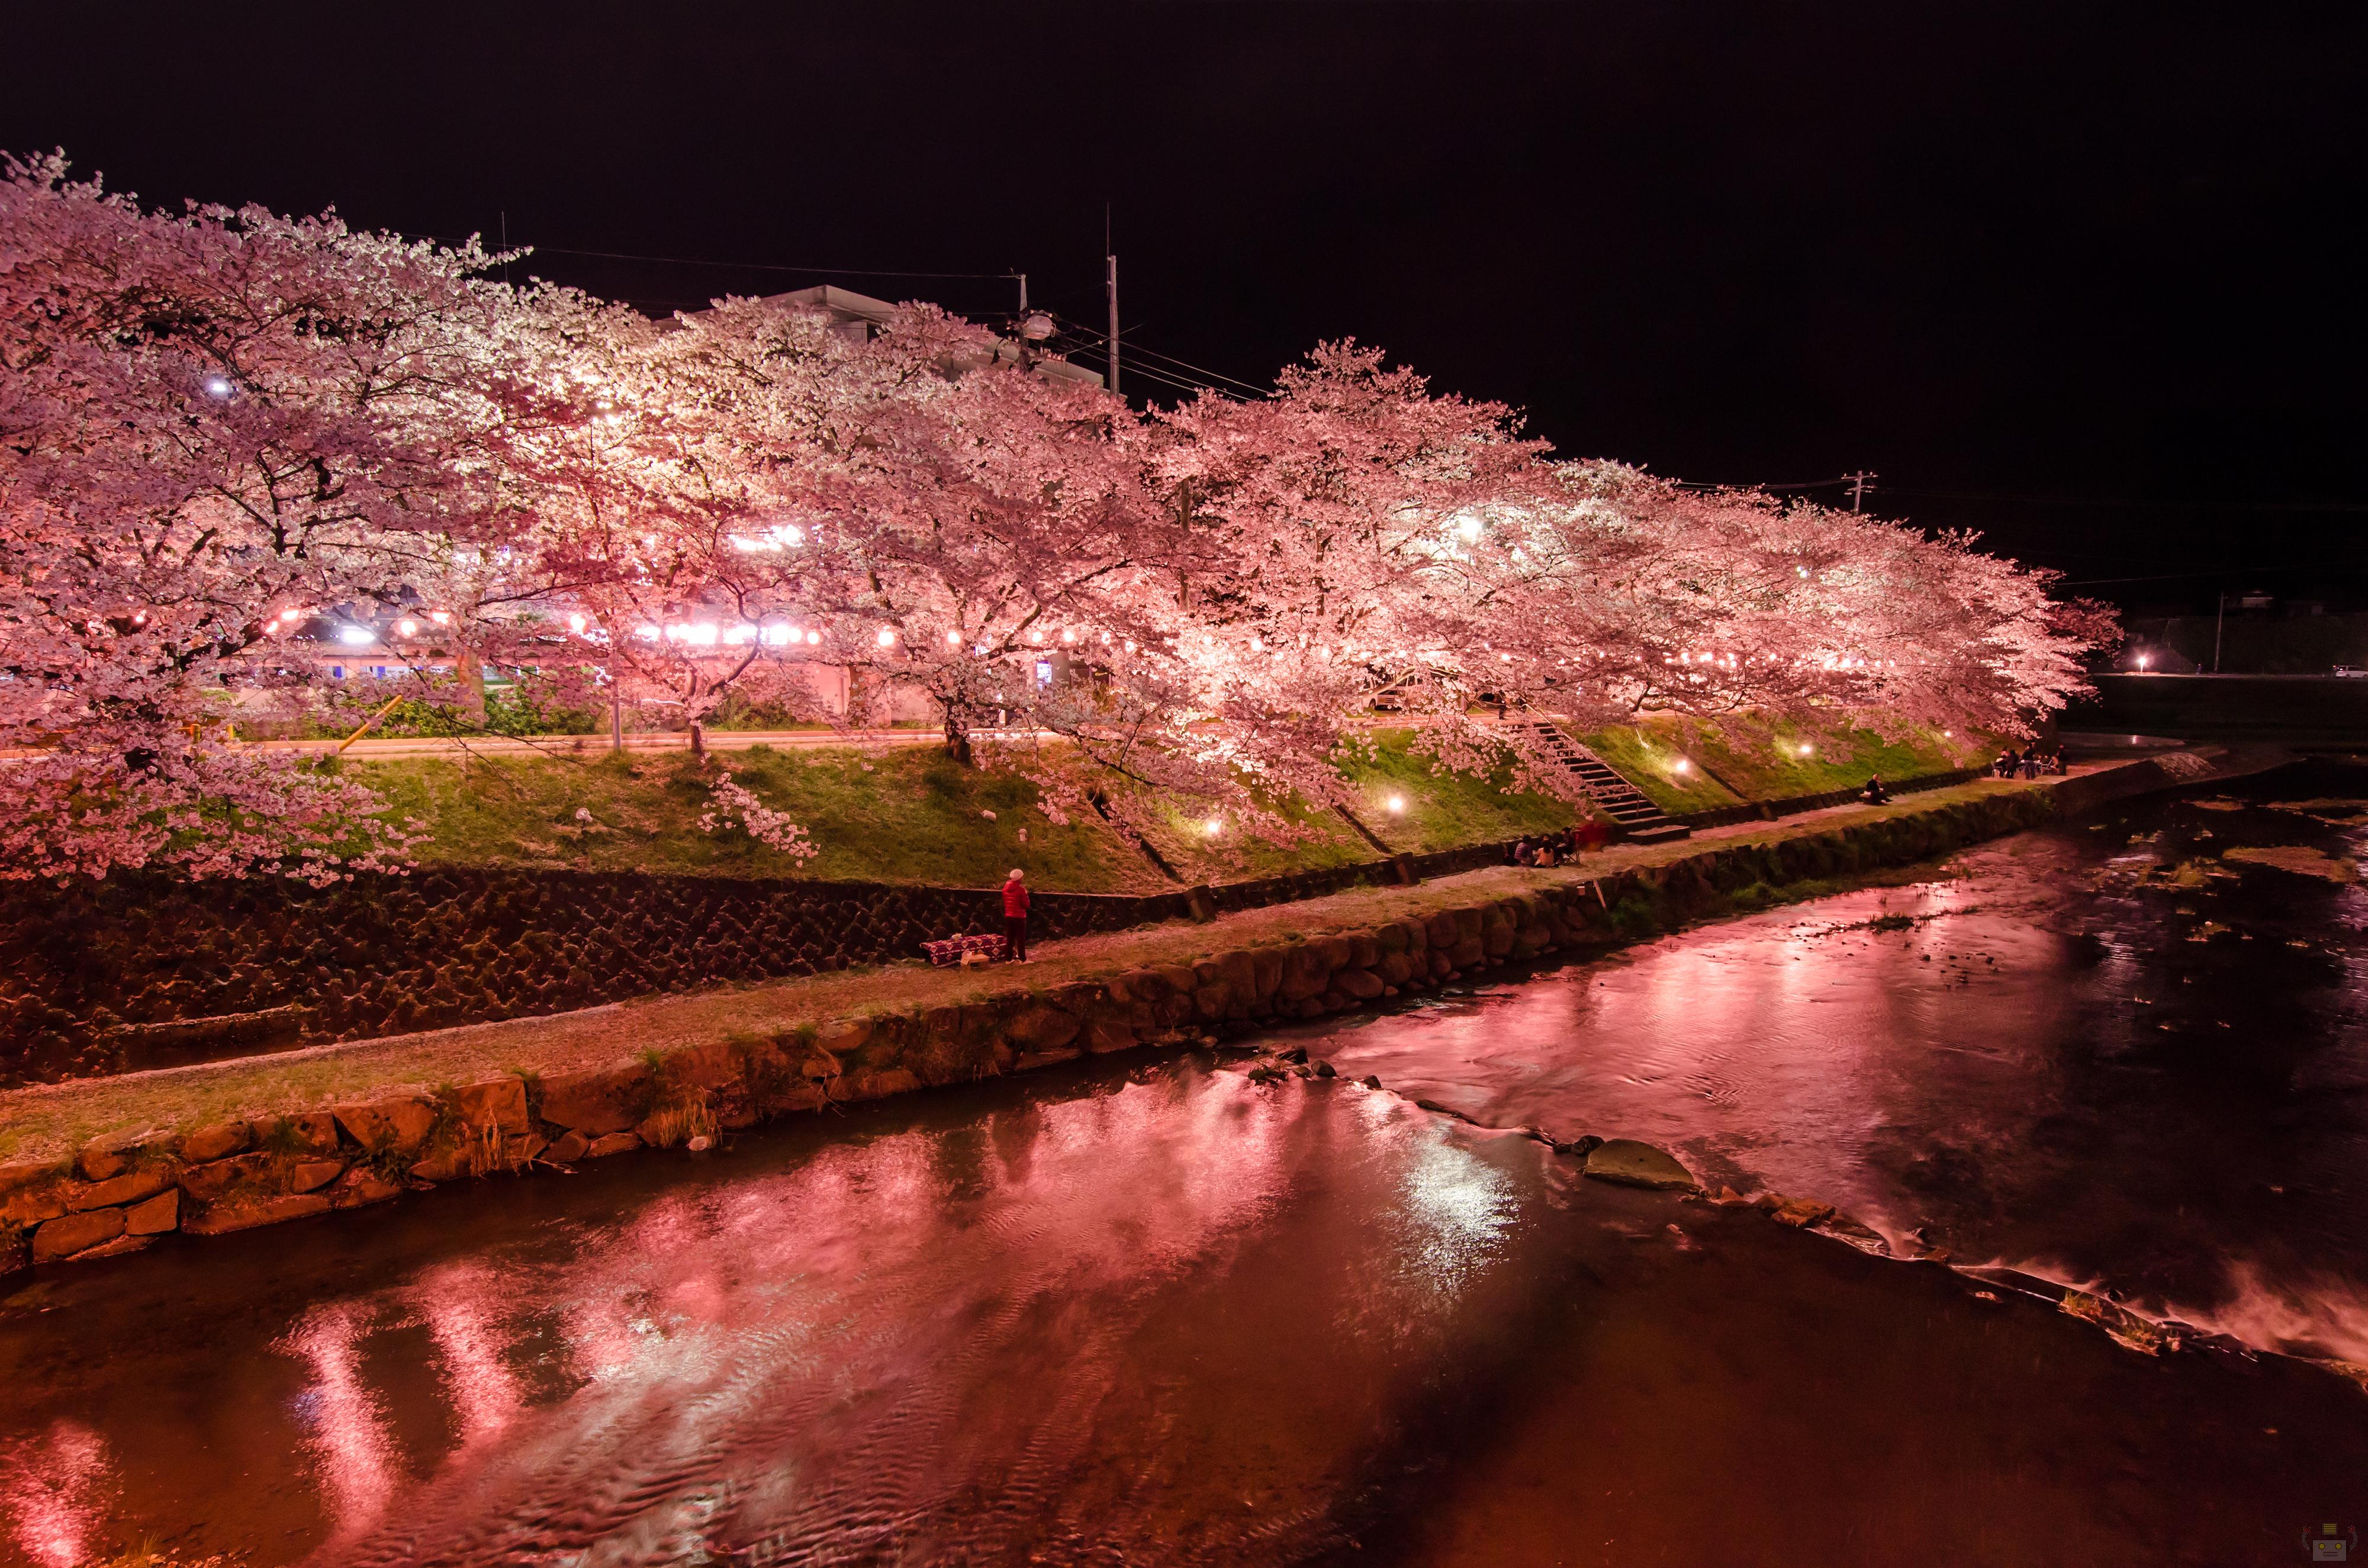 美祢さくら公園で夜桜撮ってきたよ 山口県の出張カメラマン長谷川涼太